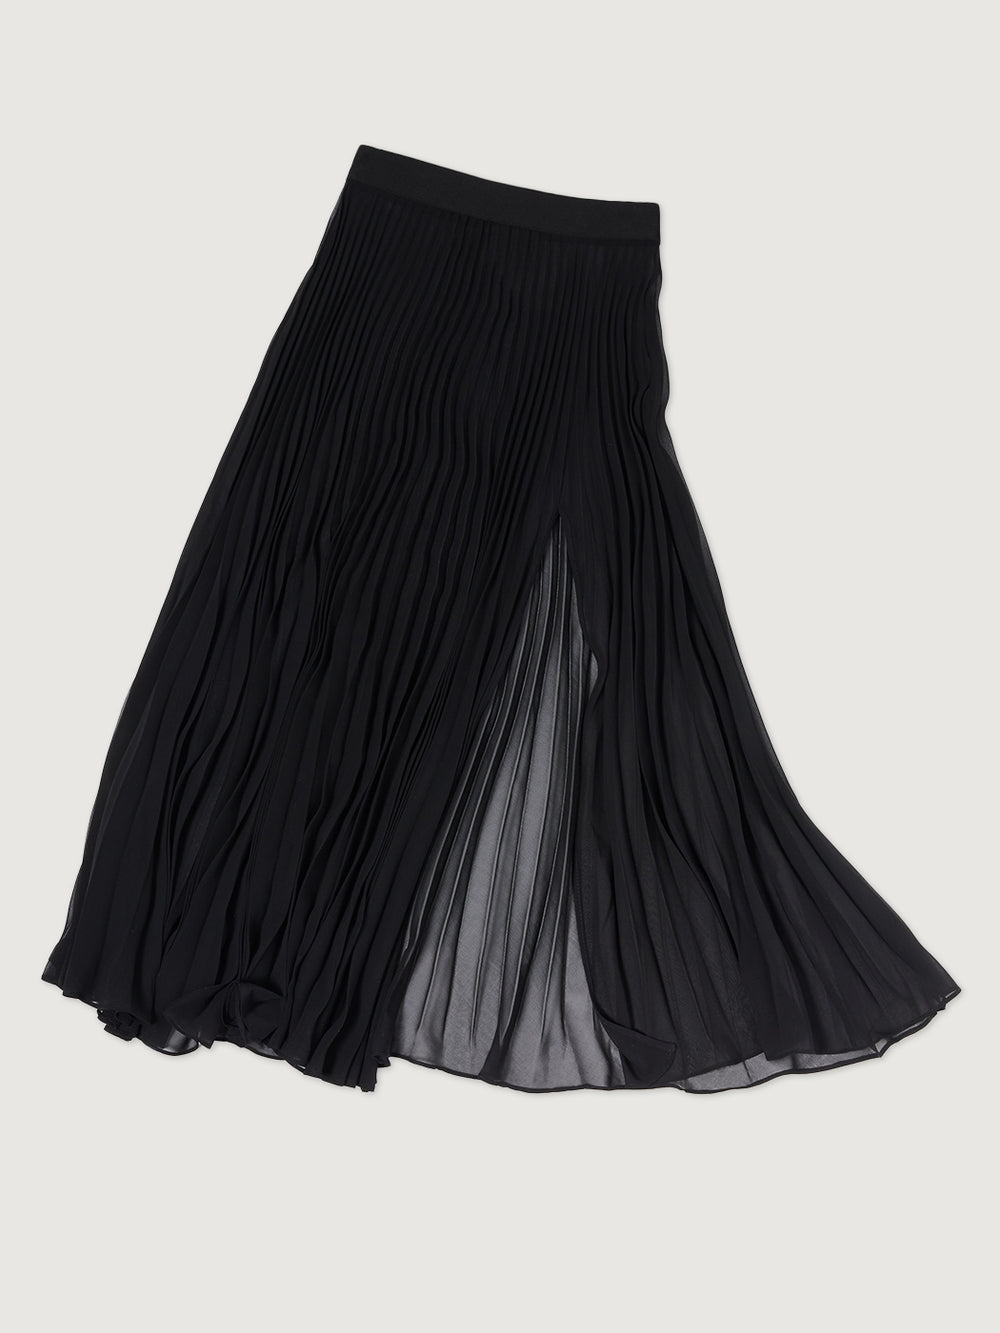 Mesh Skirt - Buy Mesh Skirt online in India